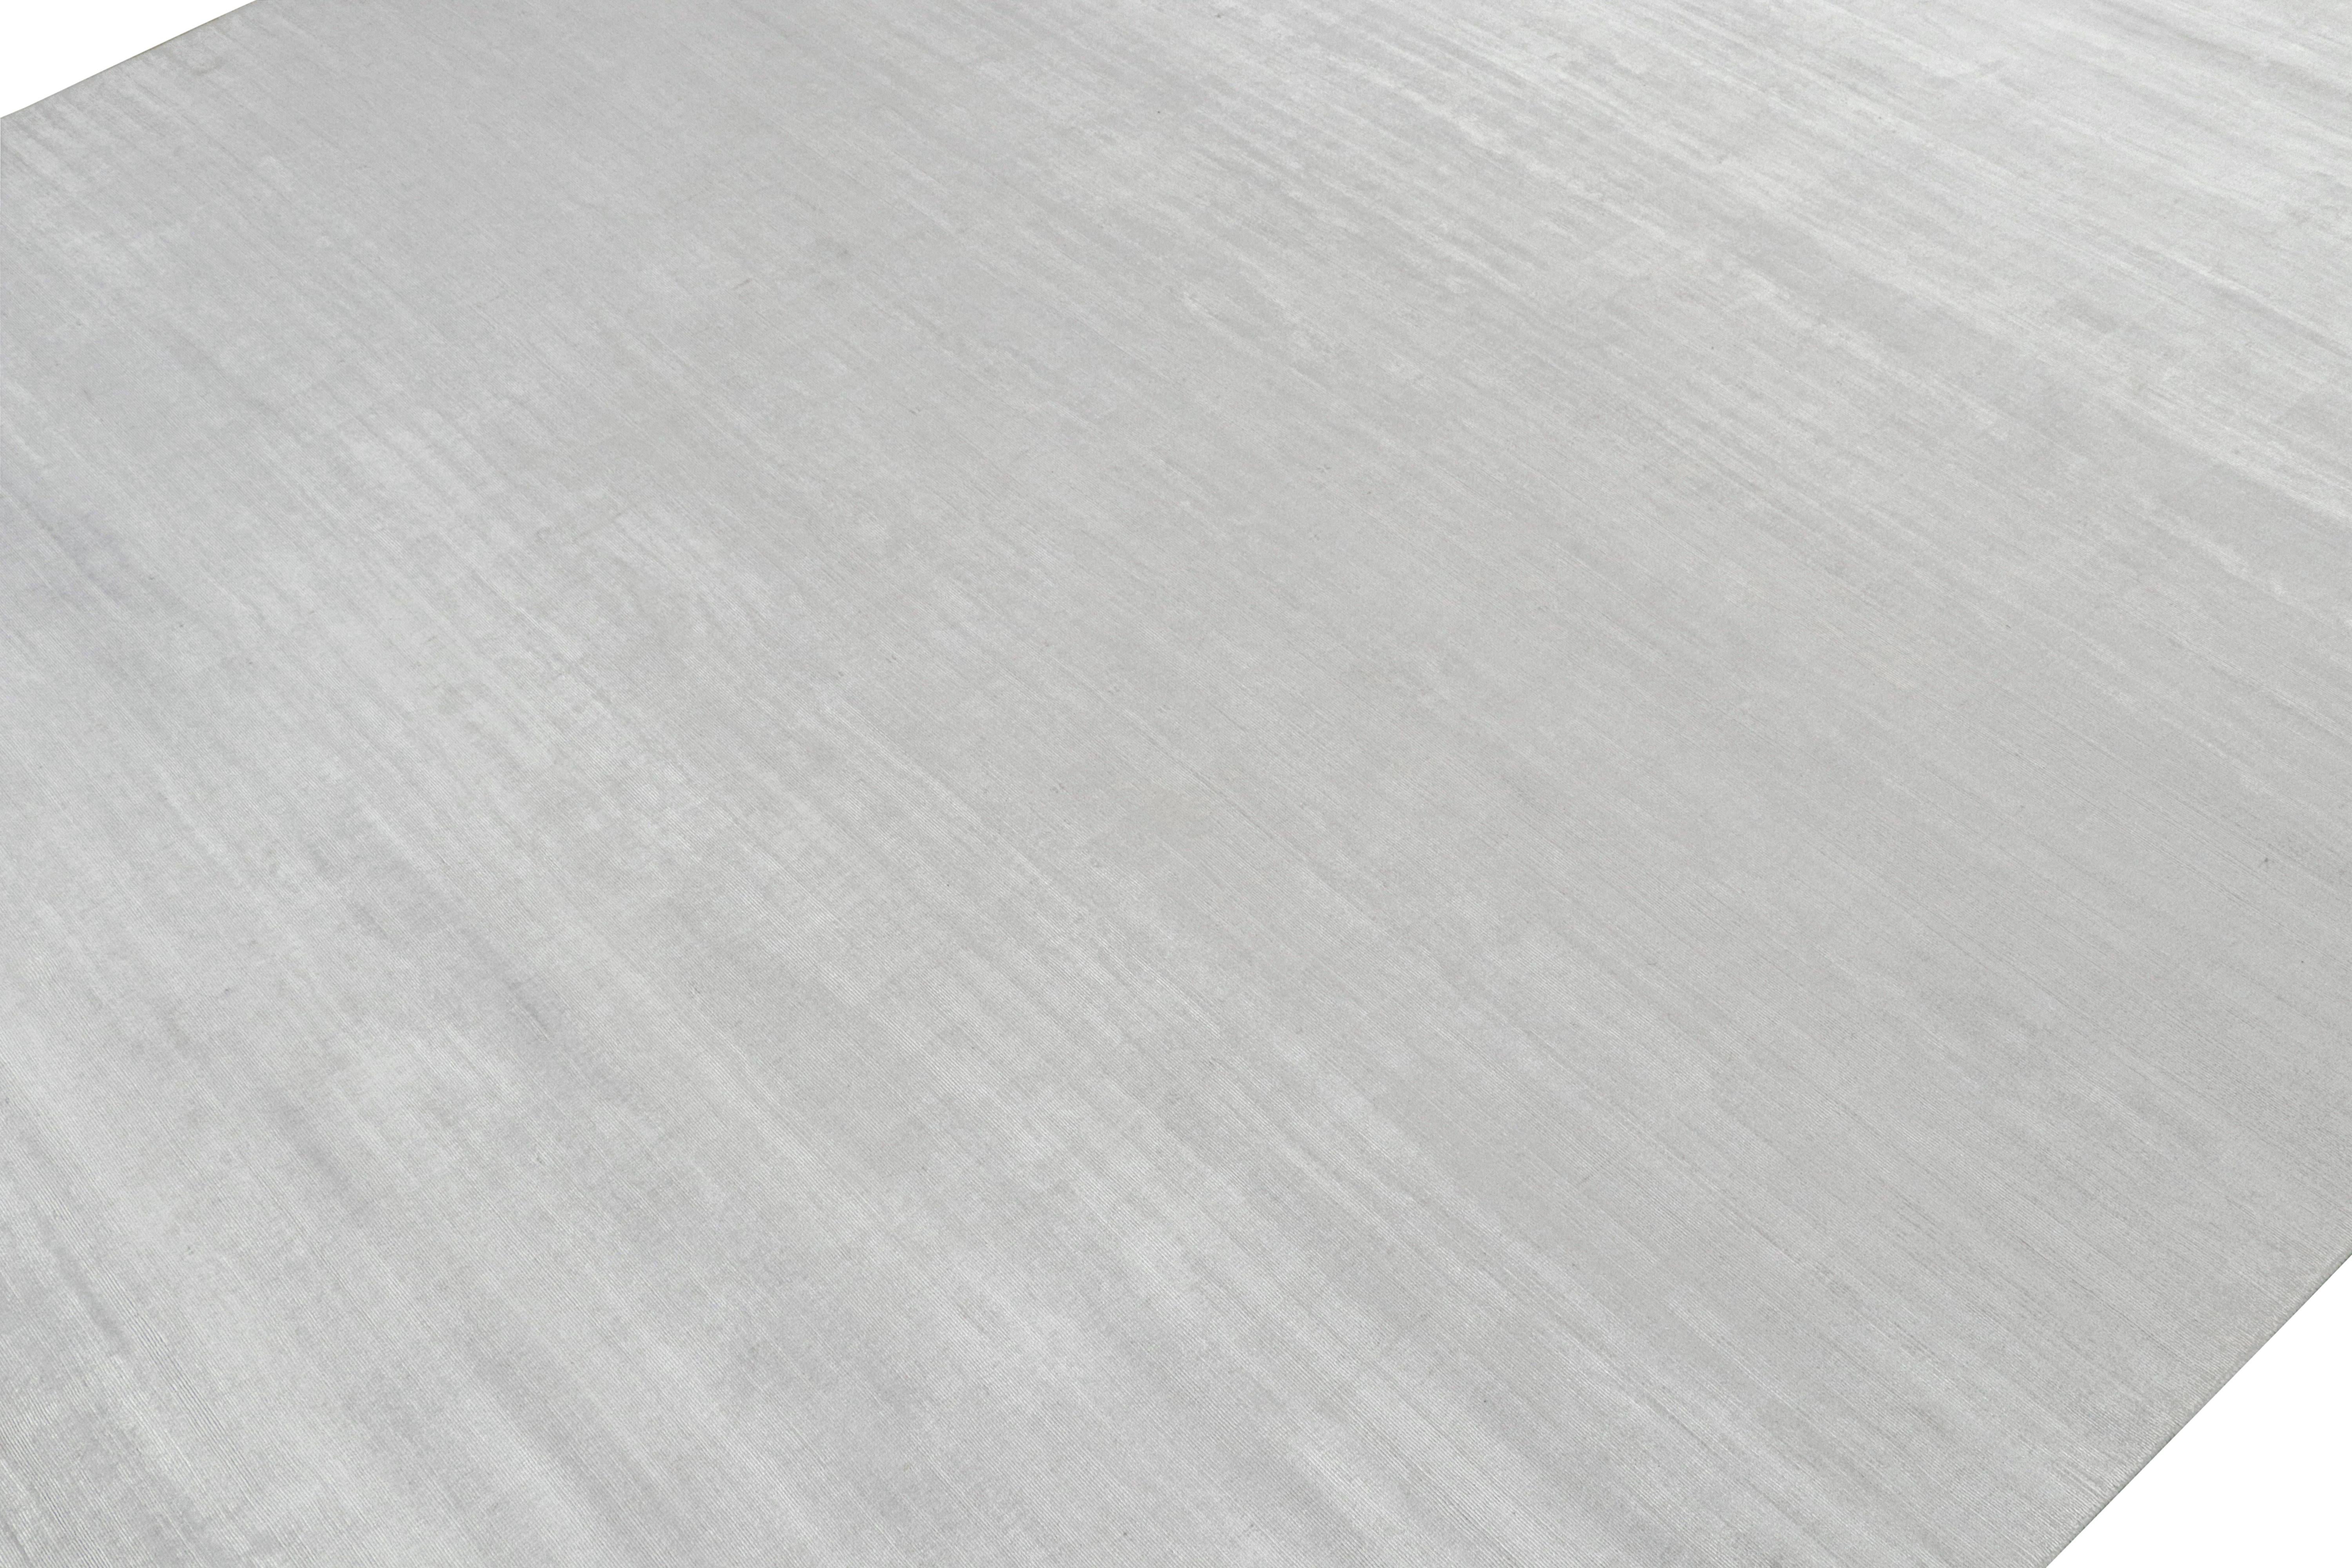 Indien Rug & Kilim's Modern Rug in Solid Grey and Off-White Striae (tapis moderne avec des rayures en gris uni et en blanc cassé) en vente